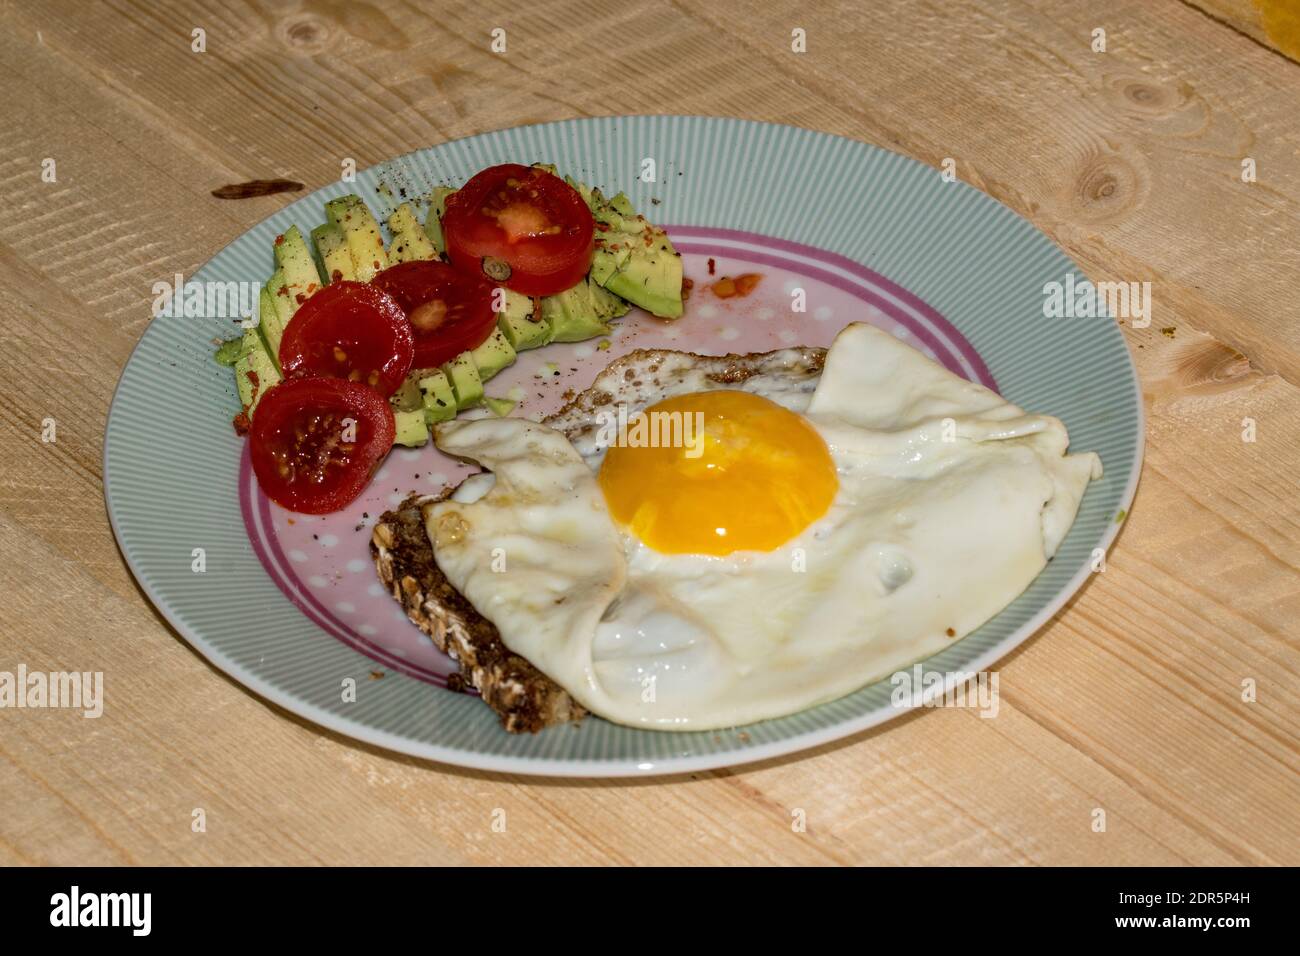 Uovo fritto su pane integrale con avocado a fette e pomodoro disposto su un piatto. Foto Stock